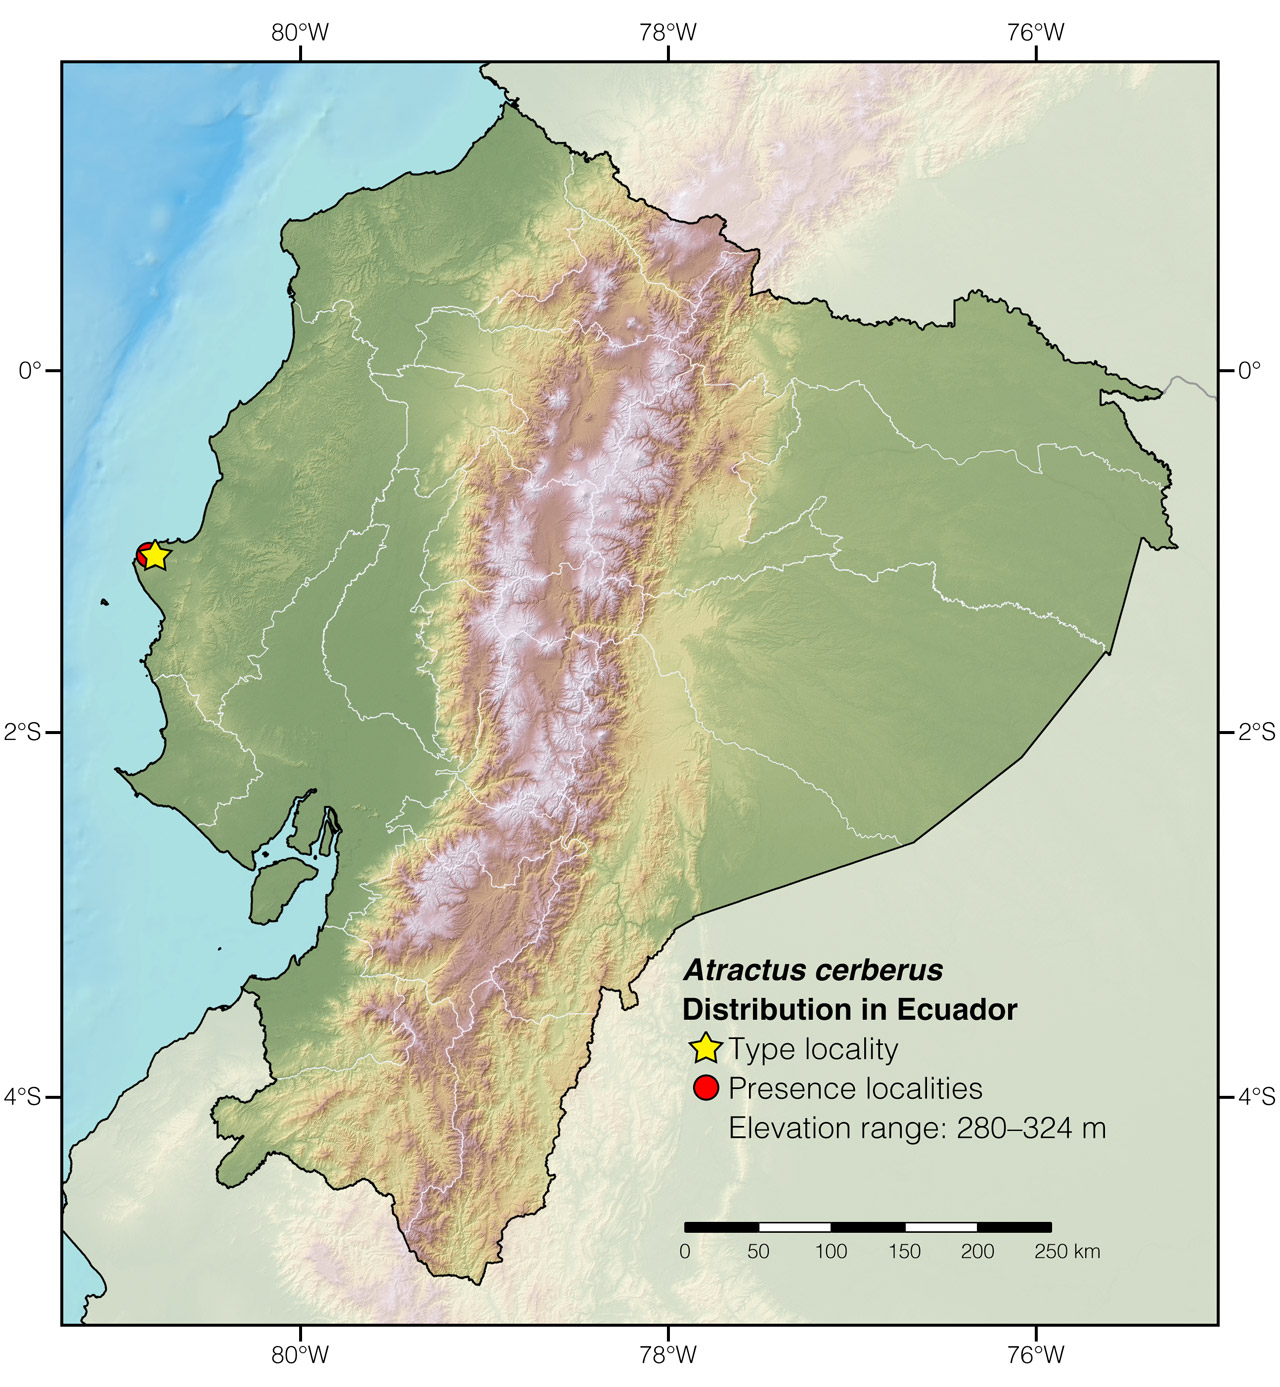 Distribution of Atractus cerberus in Ecuador